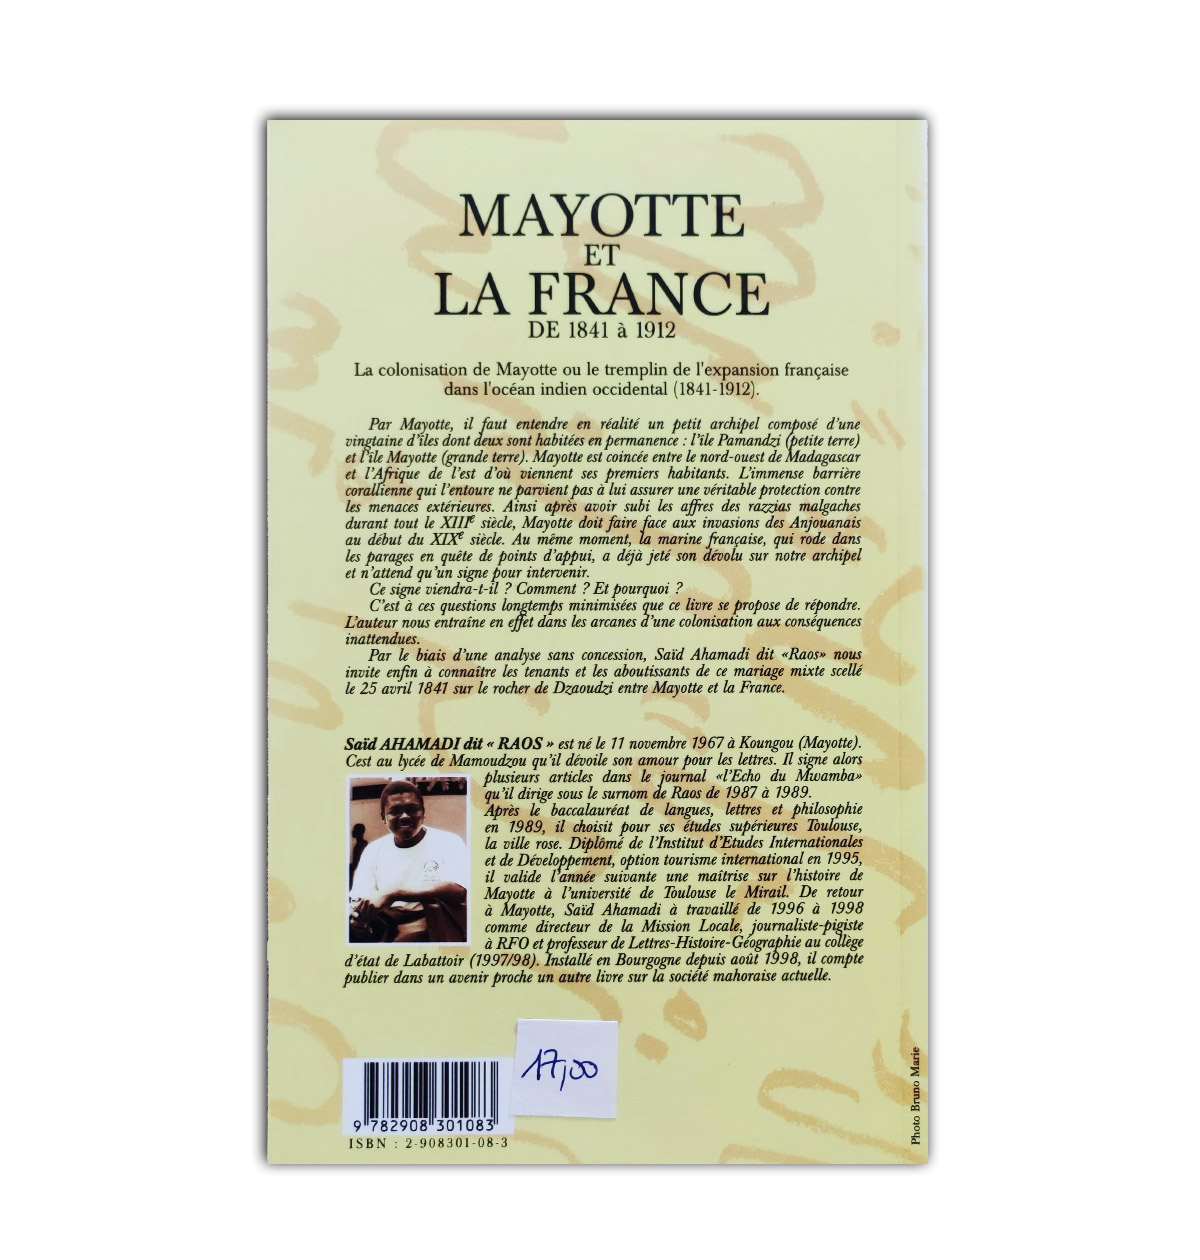 Mayotte et la france de 1841 a 1912